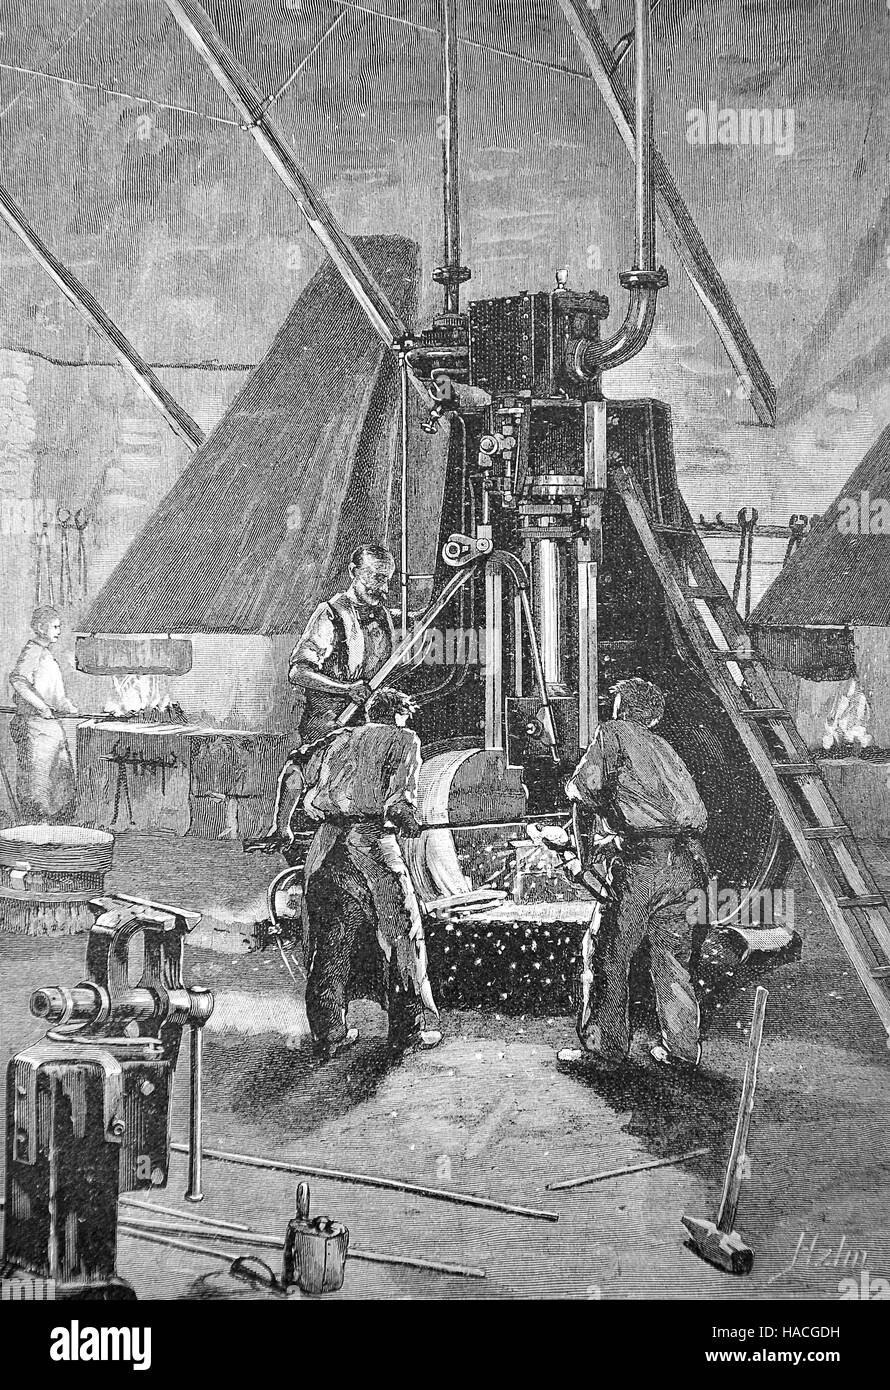 Ein Dampfhammer, angetrieben durch Dampf, macht Hammer Metall arbeiten, 1845, historische Abbildung, Holzschnitt Stockfoto